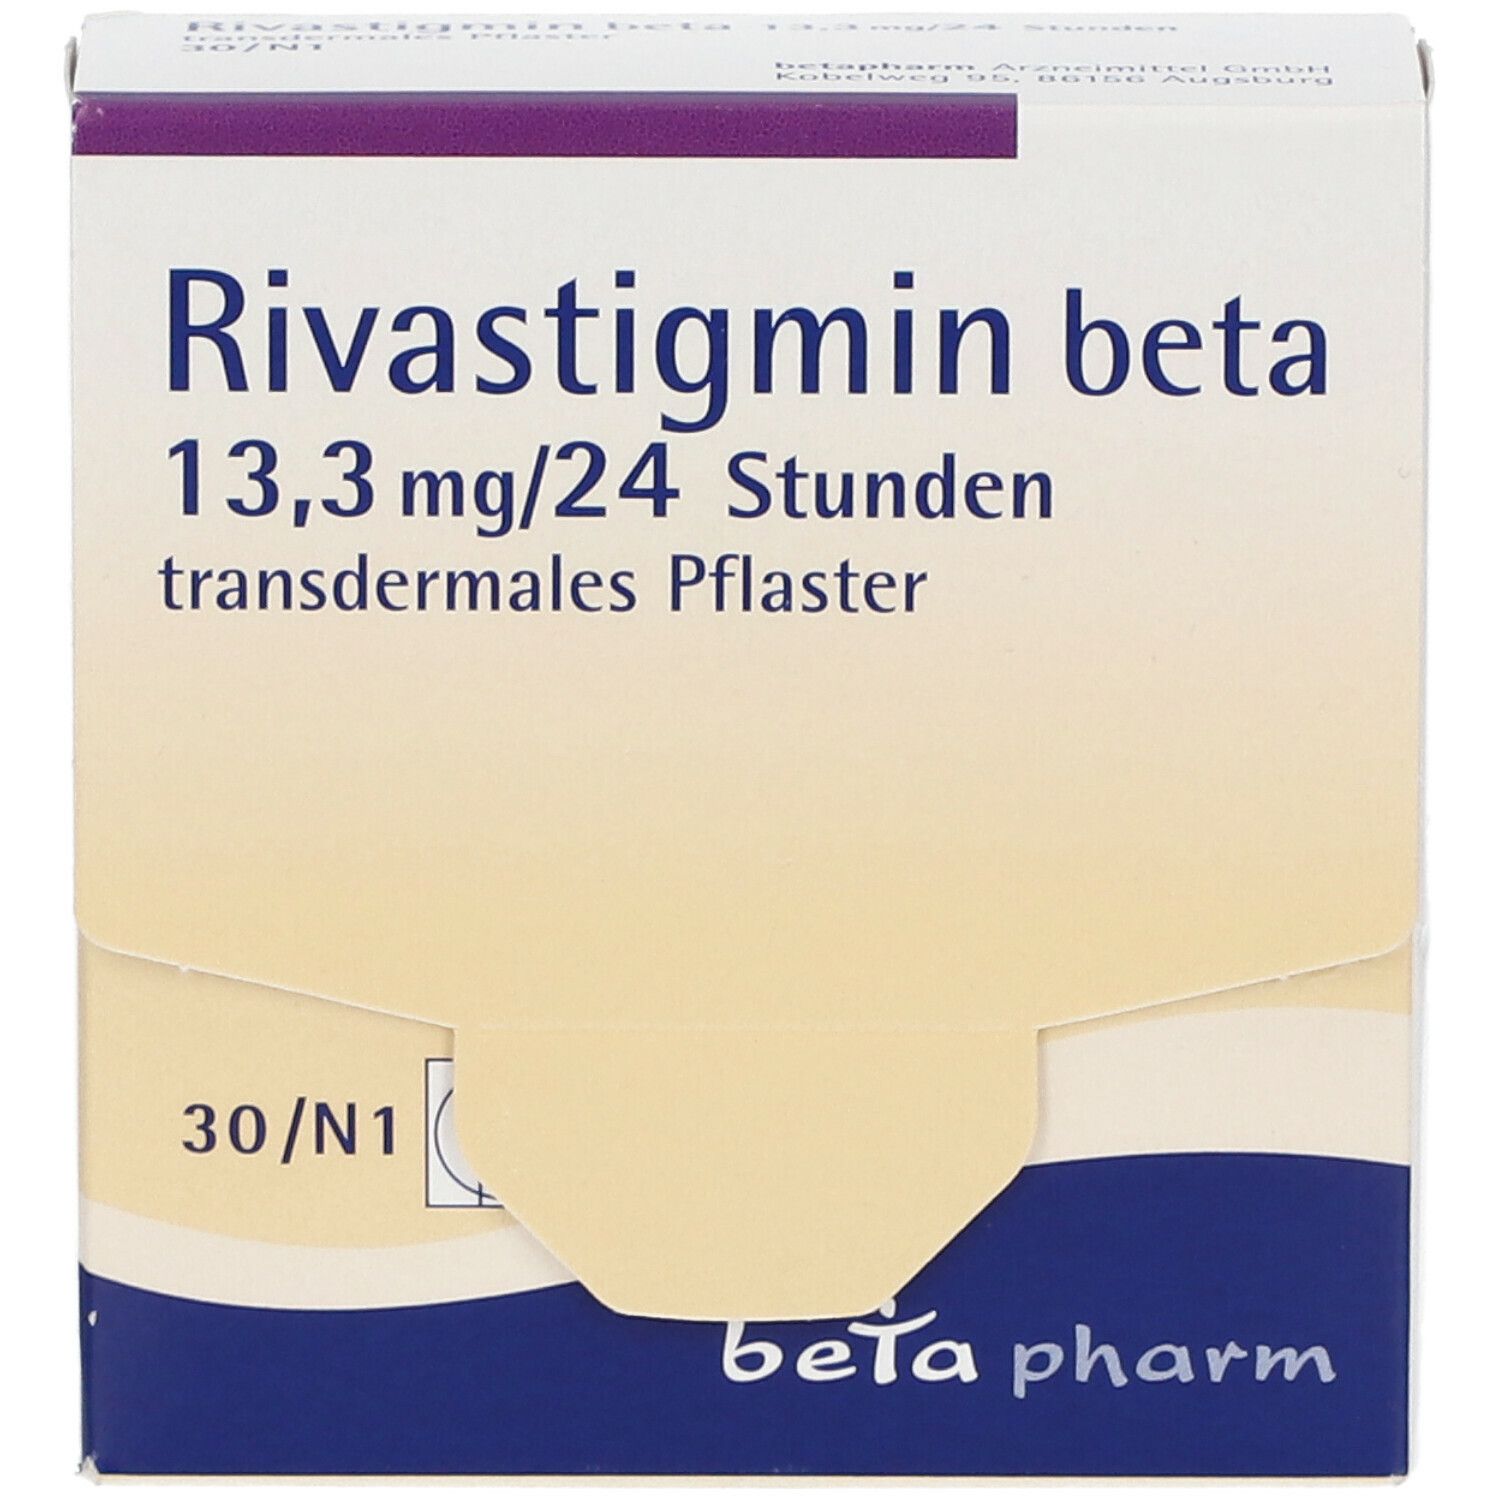 Rivastigmin beta 13,3 mg/24 Stunden